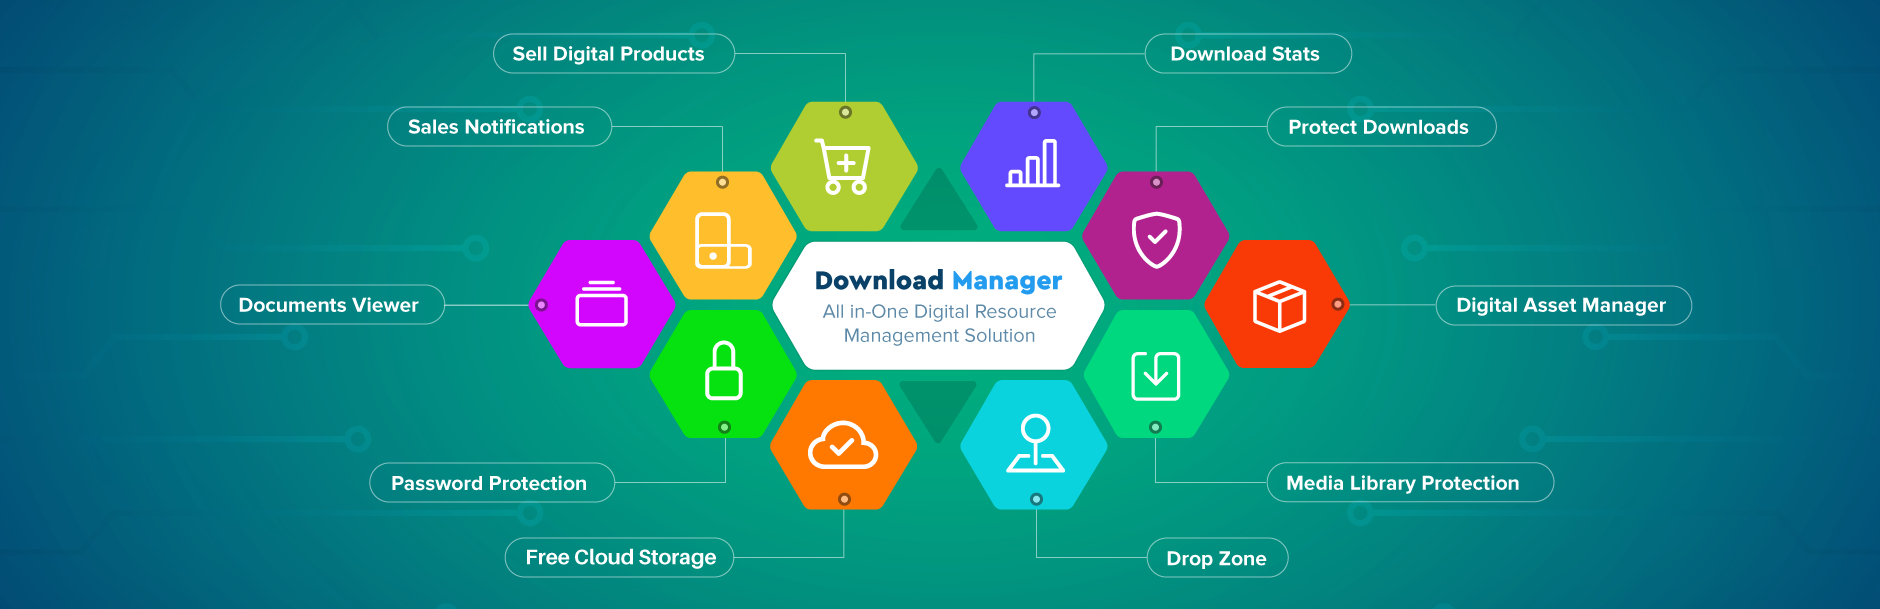 Produktbild für den Download Manager.